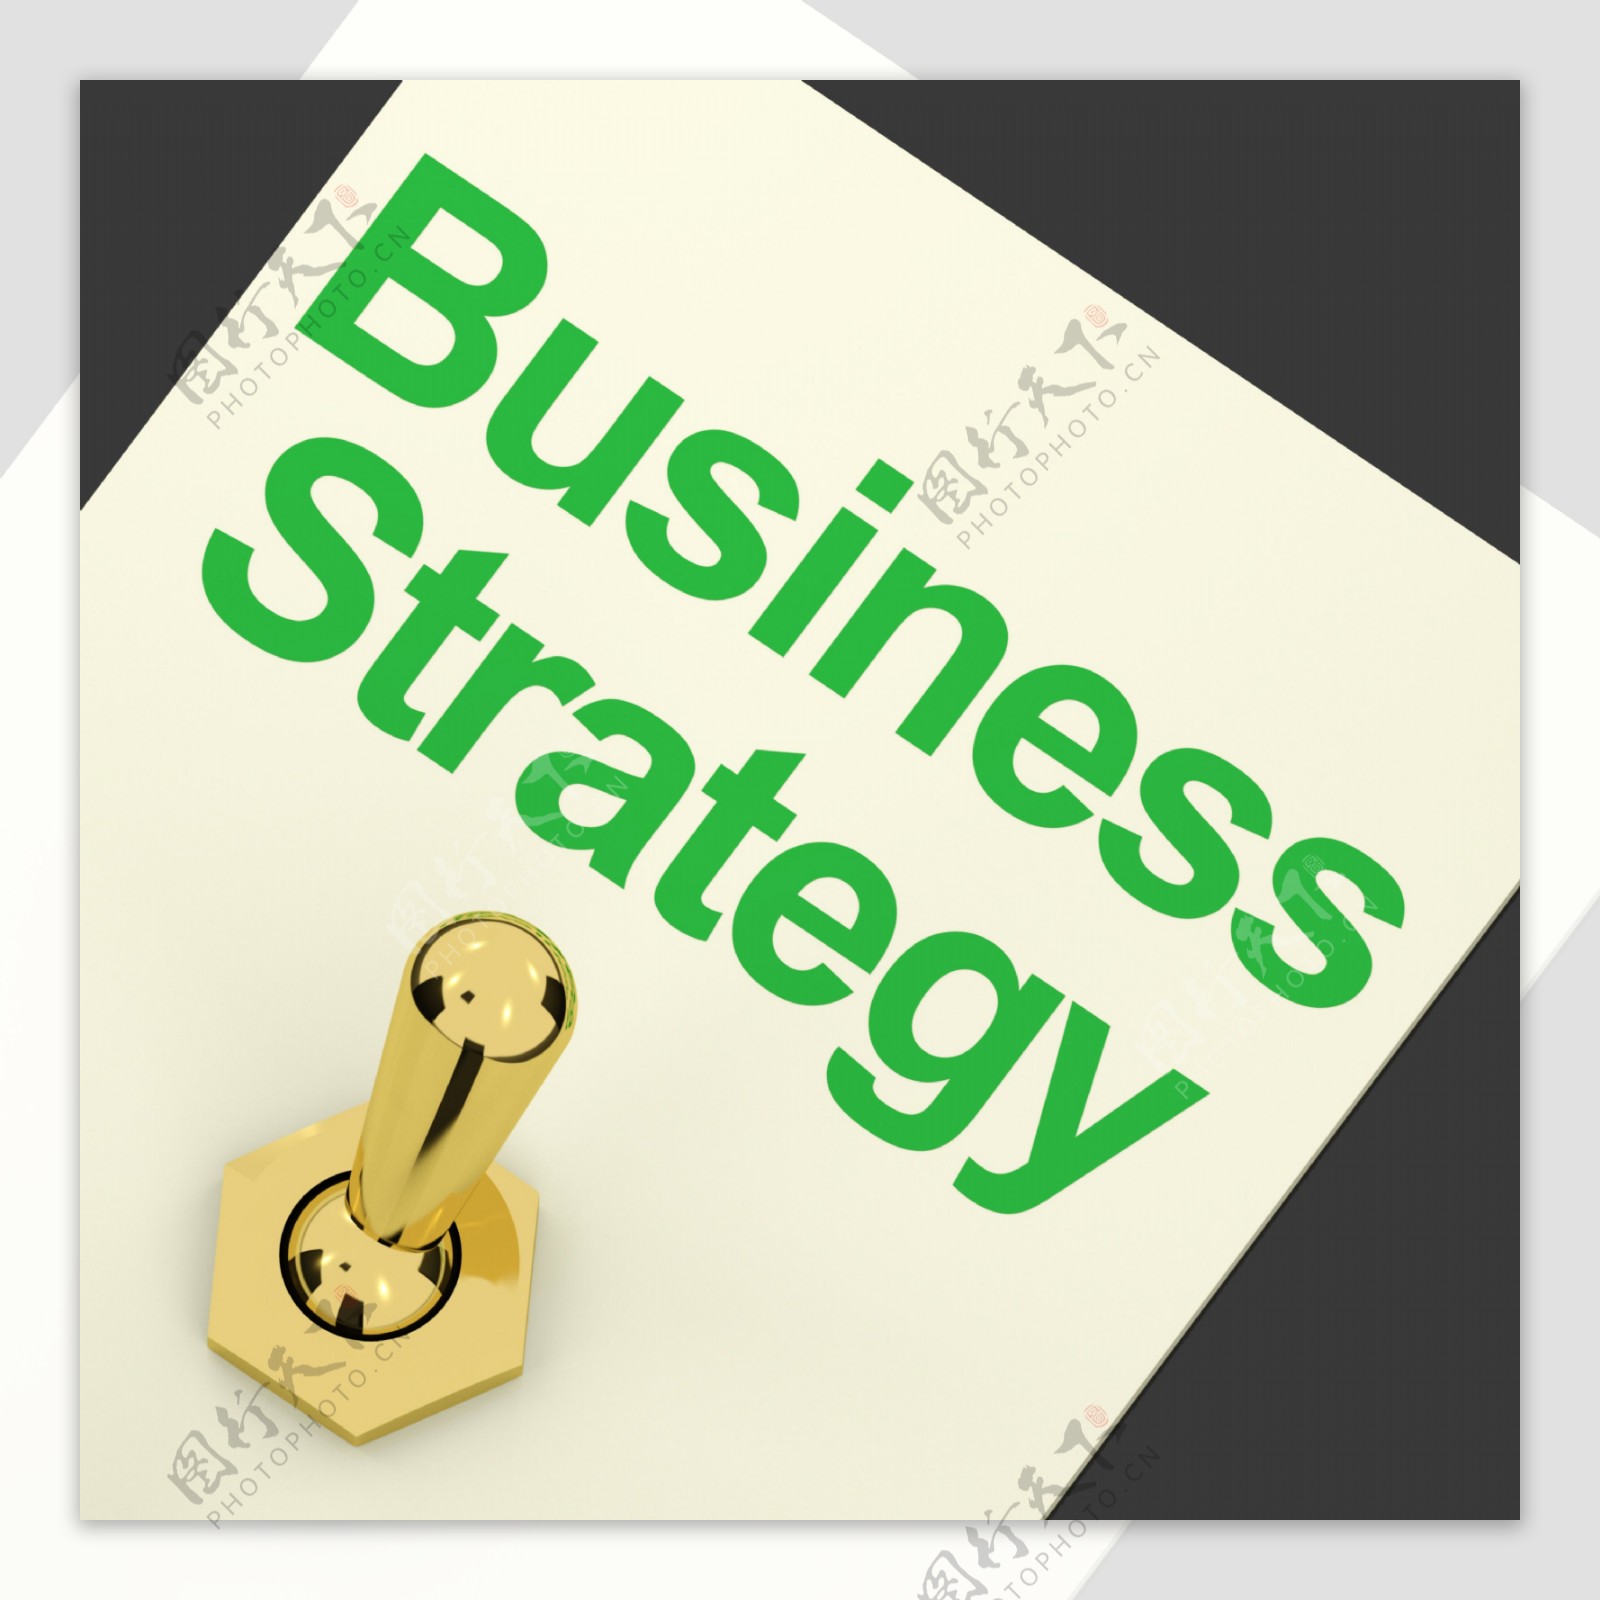 企业战略愿景和动机开关显示